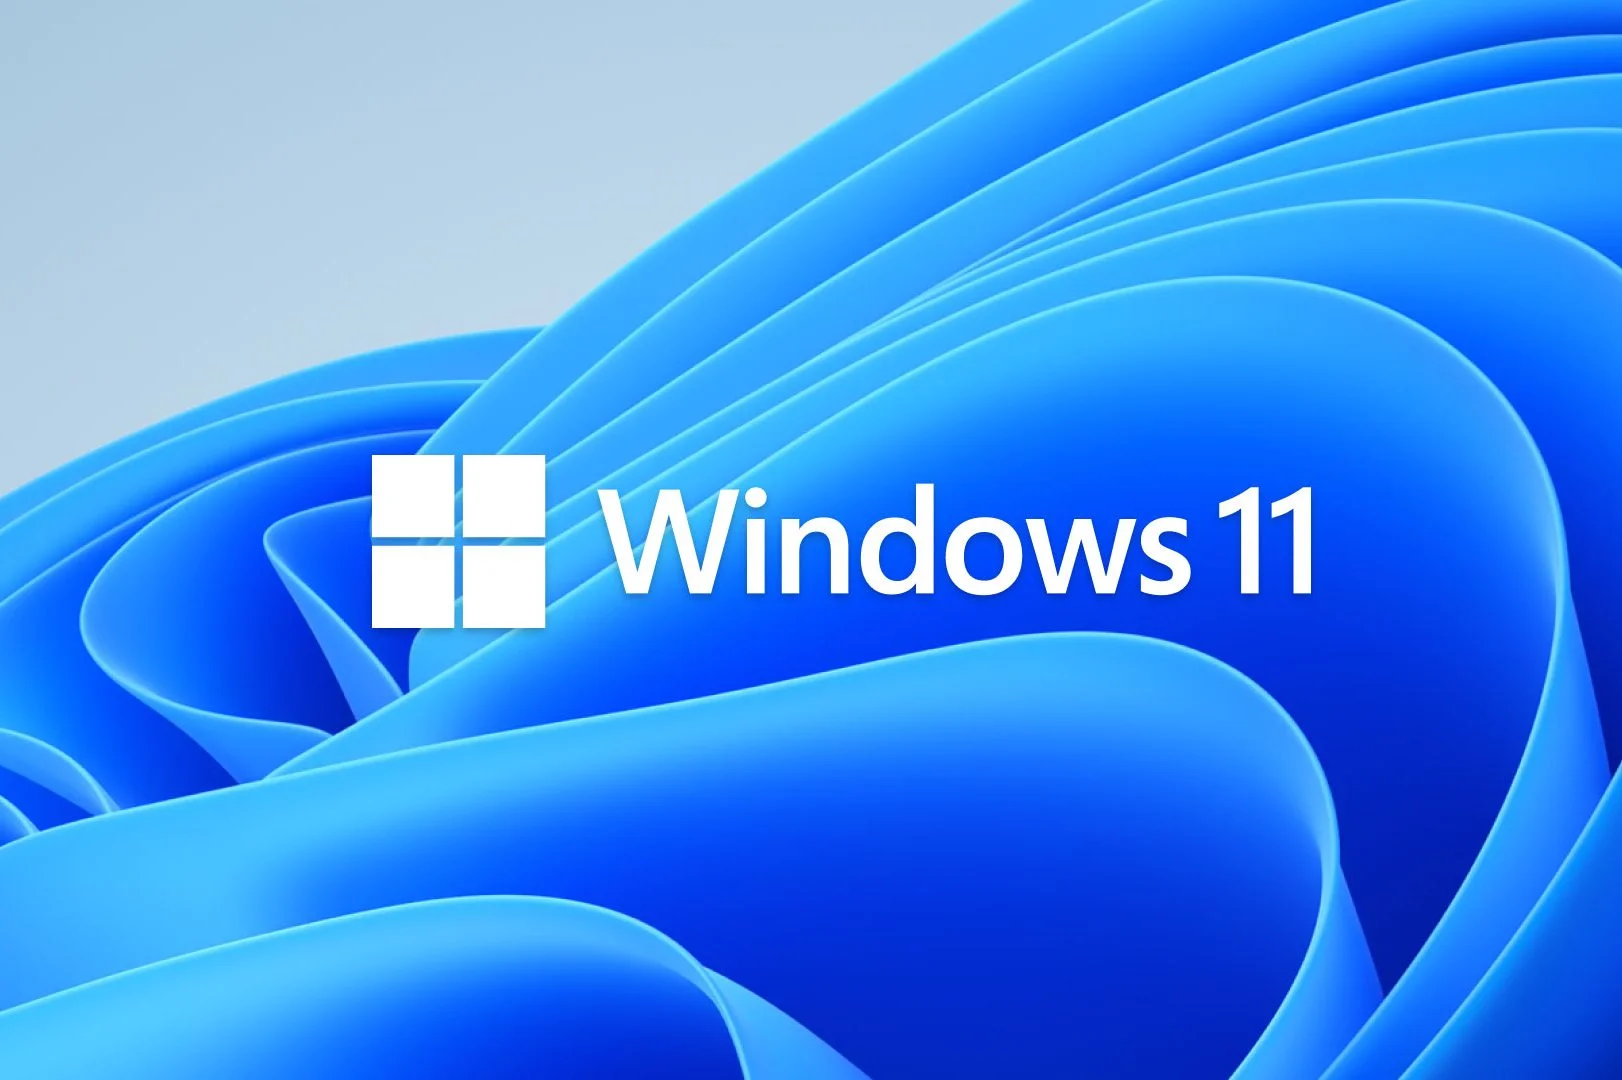 Windows 11 スクリーンショットする方法